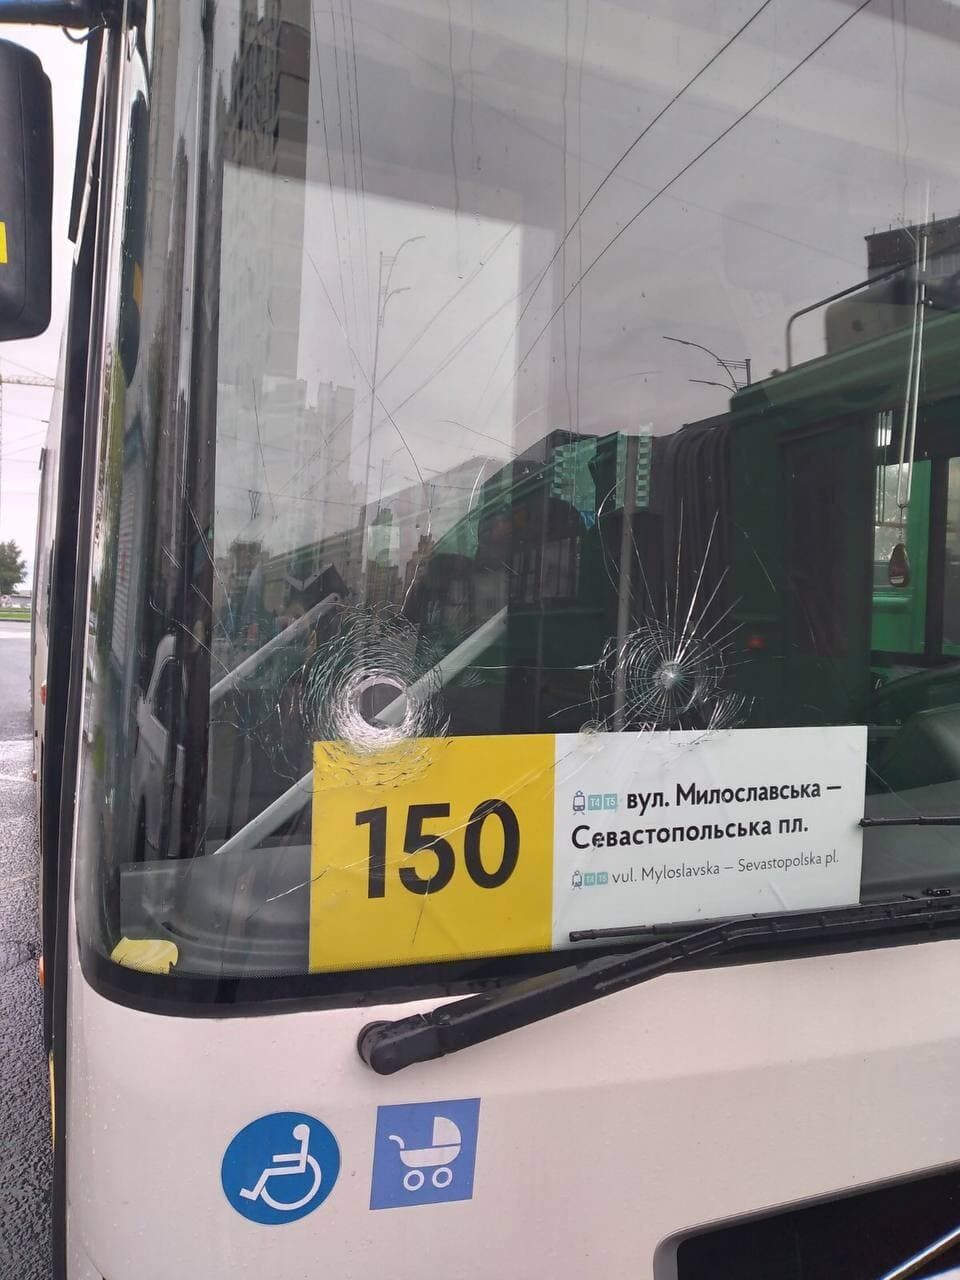 Напад було скоєно на 150-й автобус